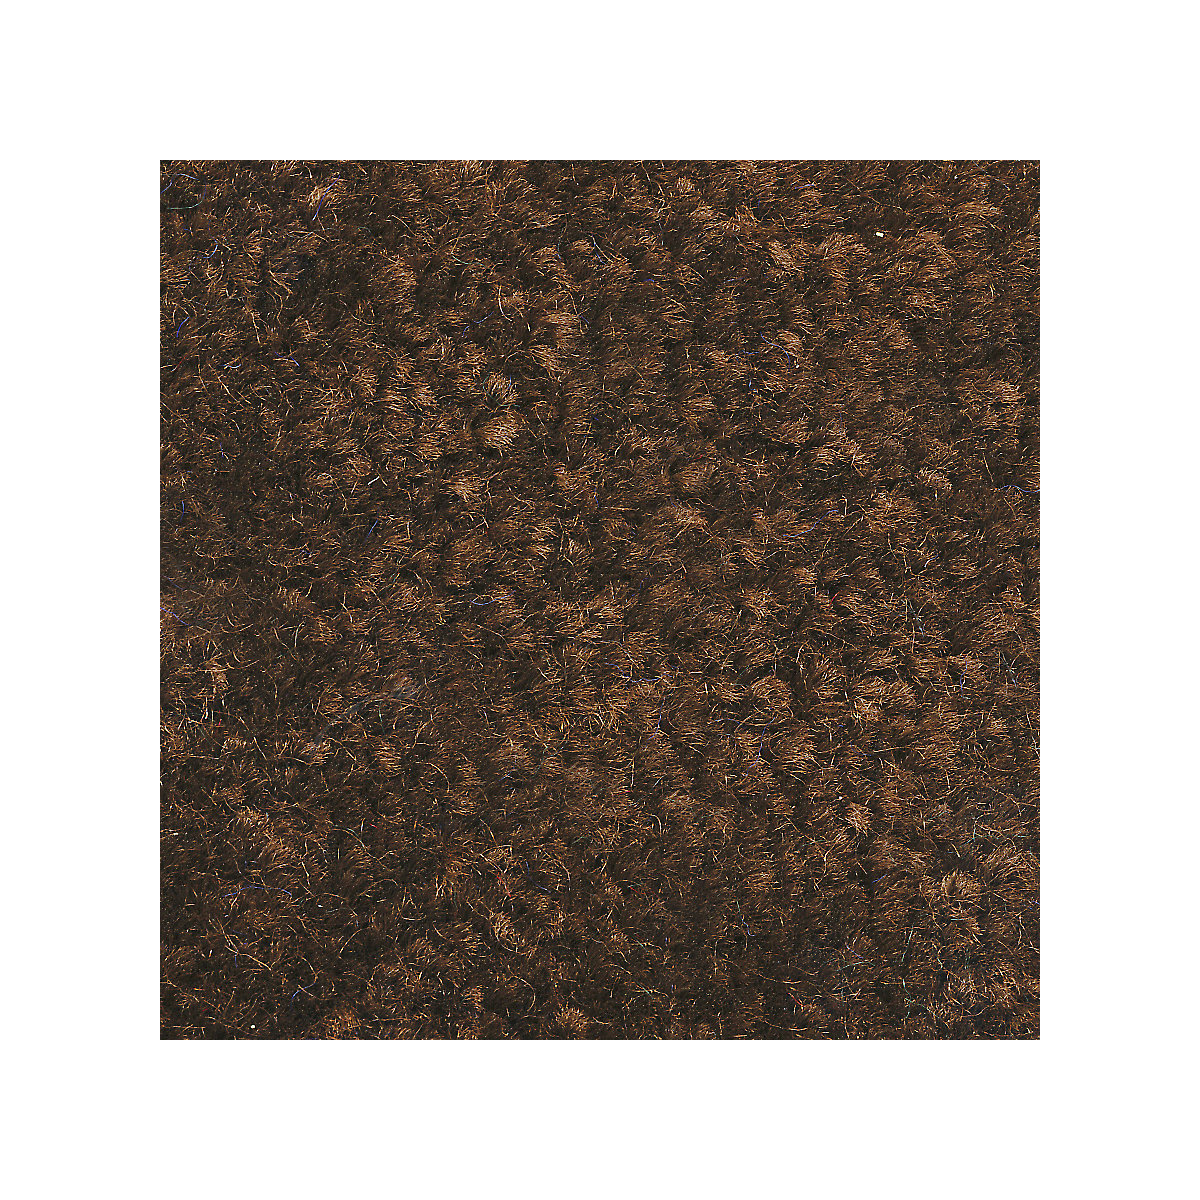 Mata wychwytująca brud do stosowania wewnątrz, runo z polipropylenu, dł. x szer. 1500 x 900 mm, brązowy